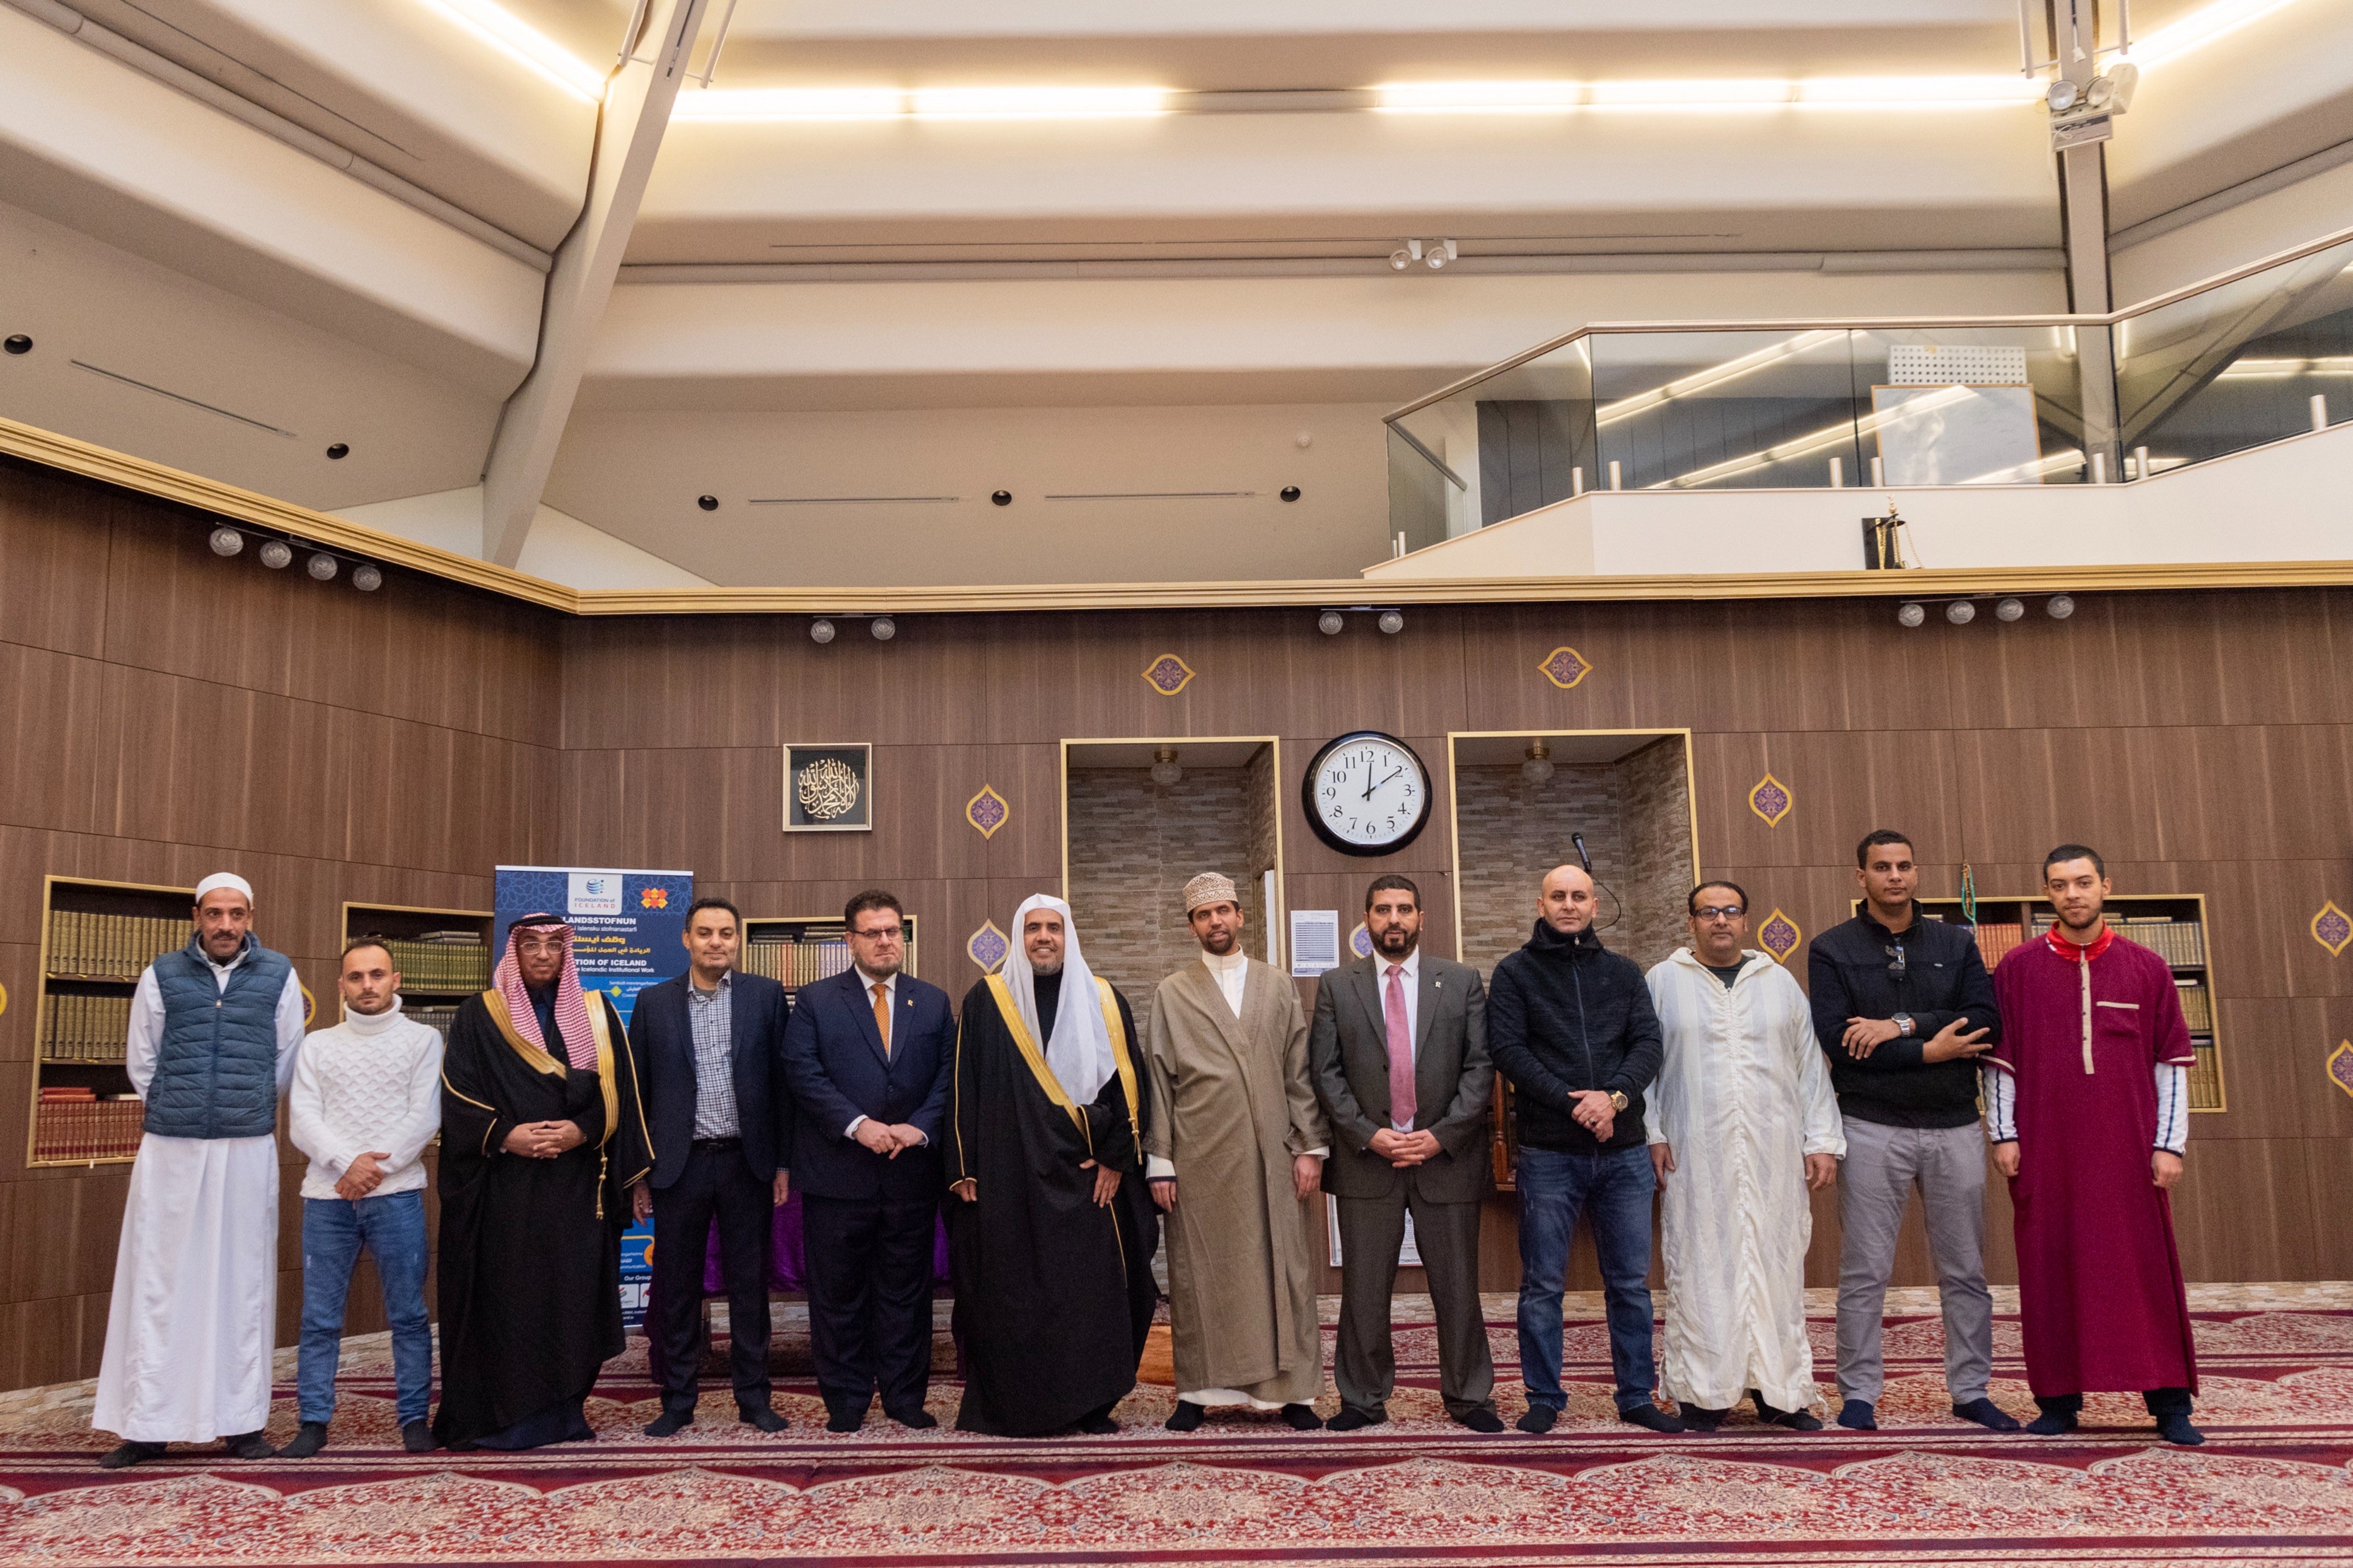 L’année dernière, Mohammad Alissa a visité le Centre culturel islamique d’Islande pour rencontrer des représentants musulmans et discuter de l’importance du dialogue interreligieux et de l’ouverture aux autres.